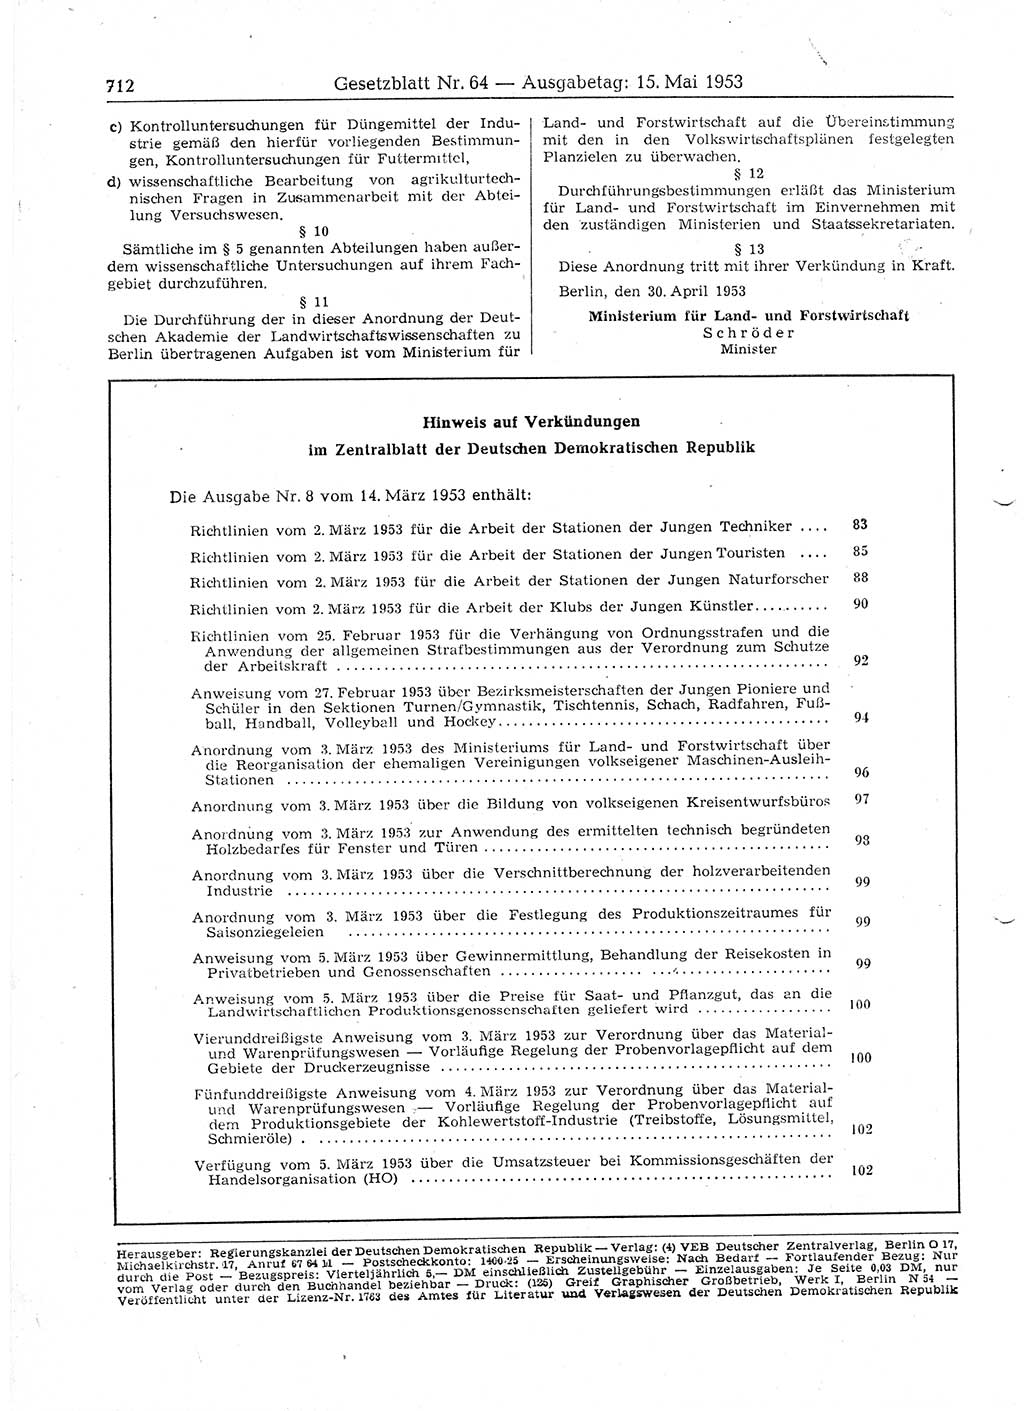 Gesetzblatt (GBl.) der Deutschen Demokratischen Republik (DDR) 1953, Seite 712 (GBl. DDR 1953, S. 712)